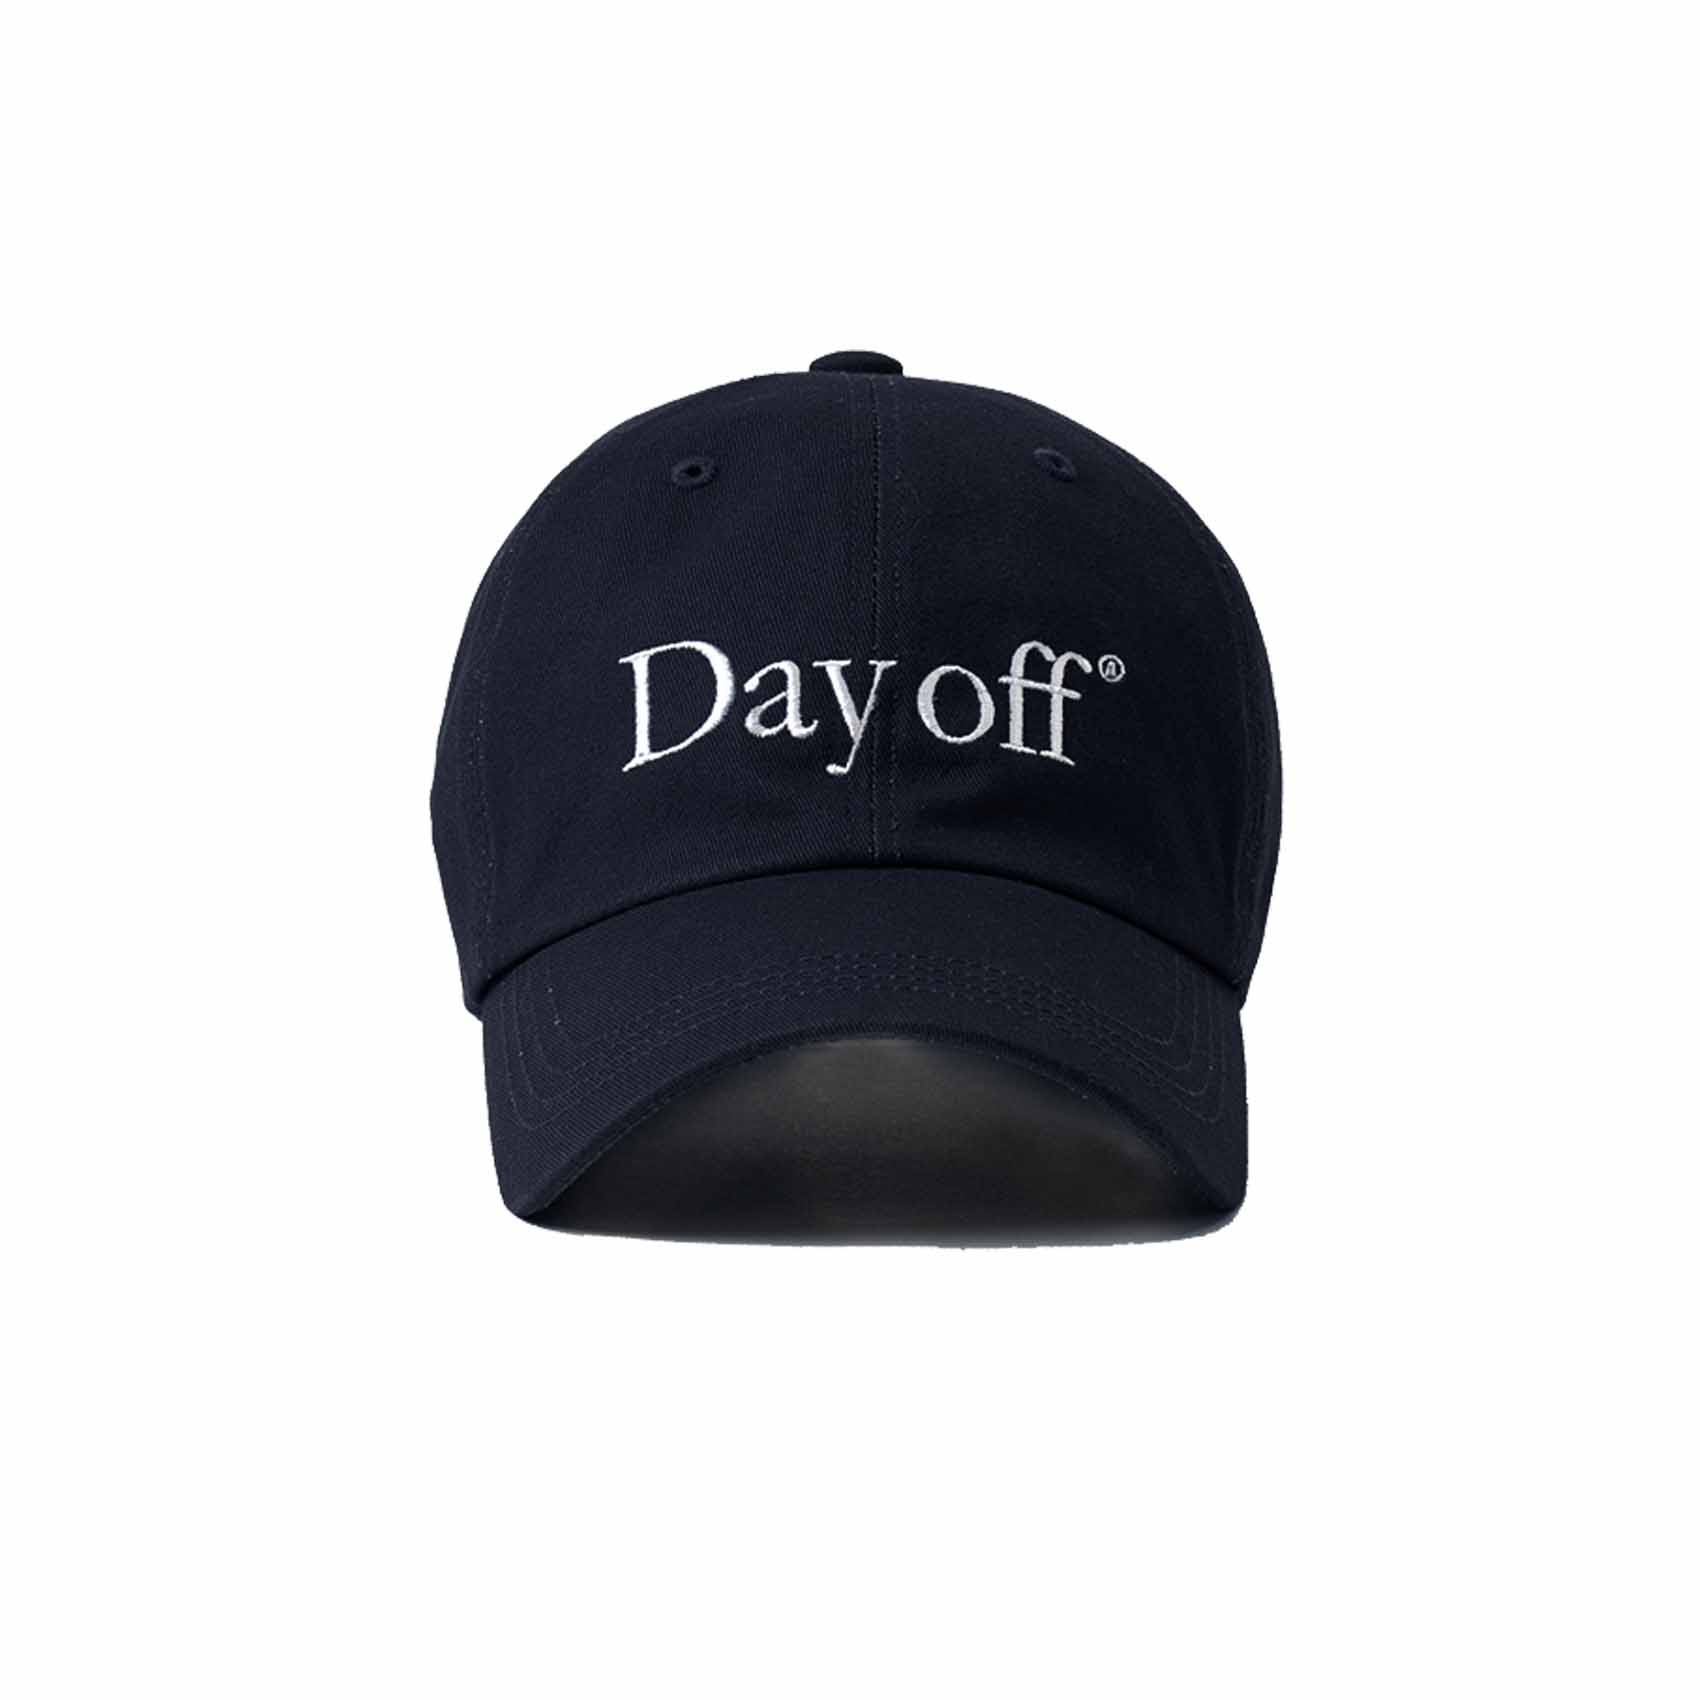 DAY OFF CAP - NAVY